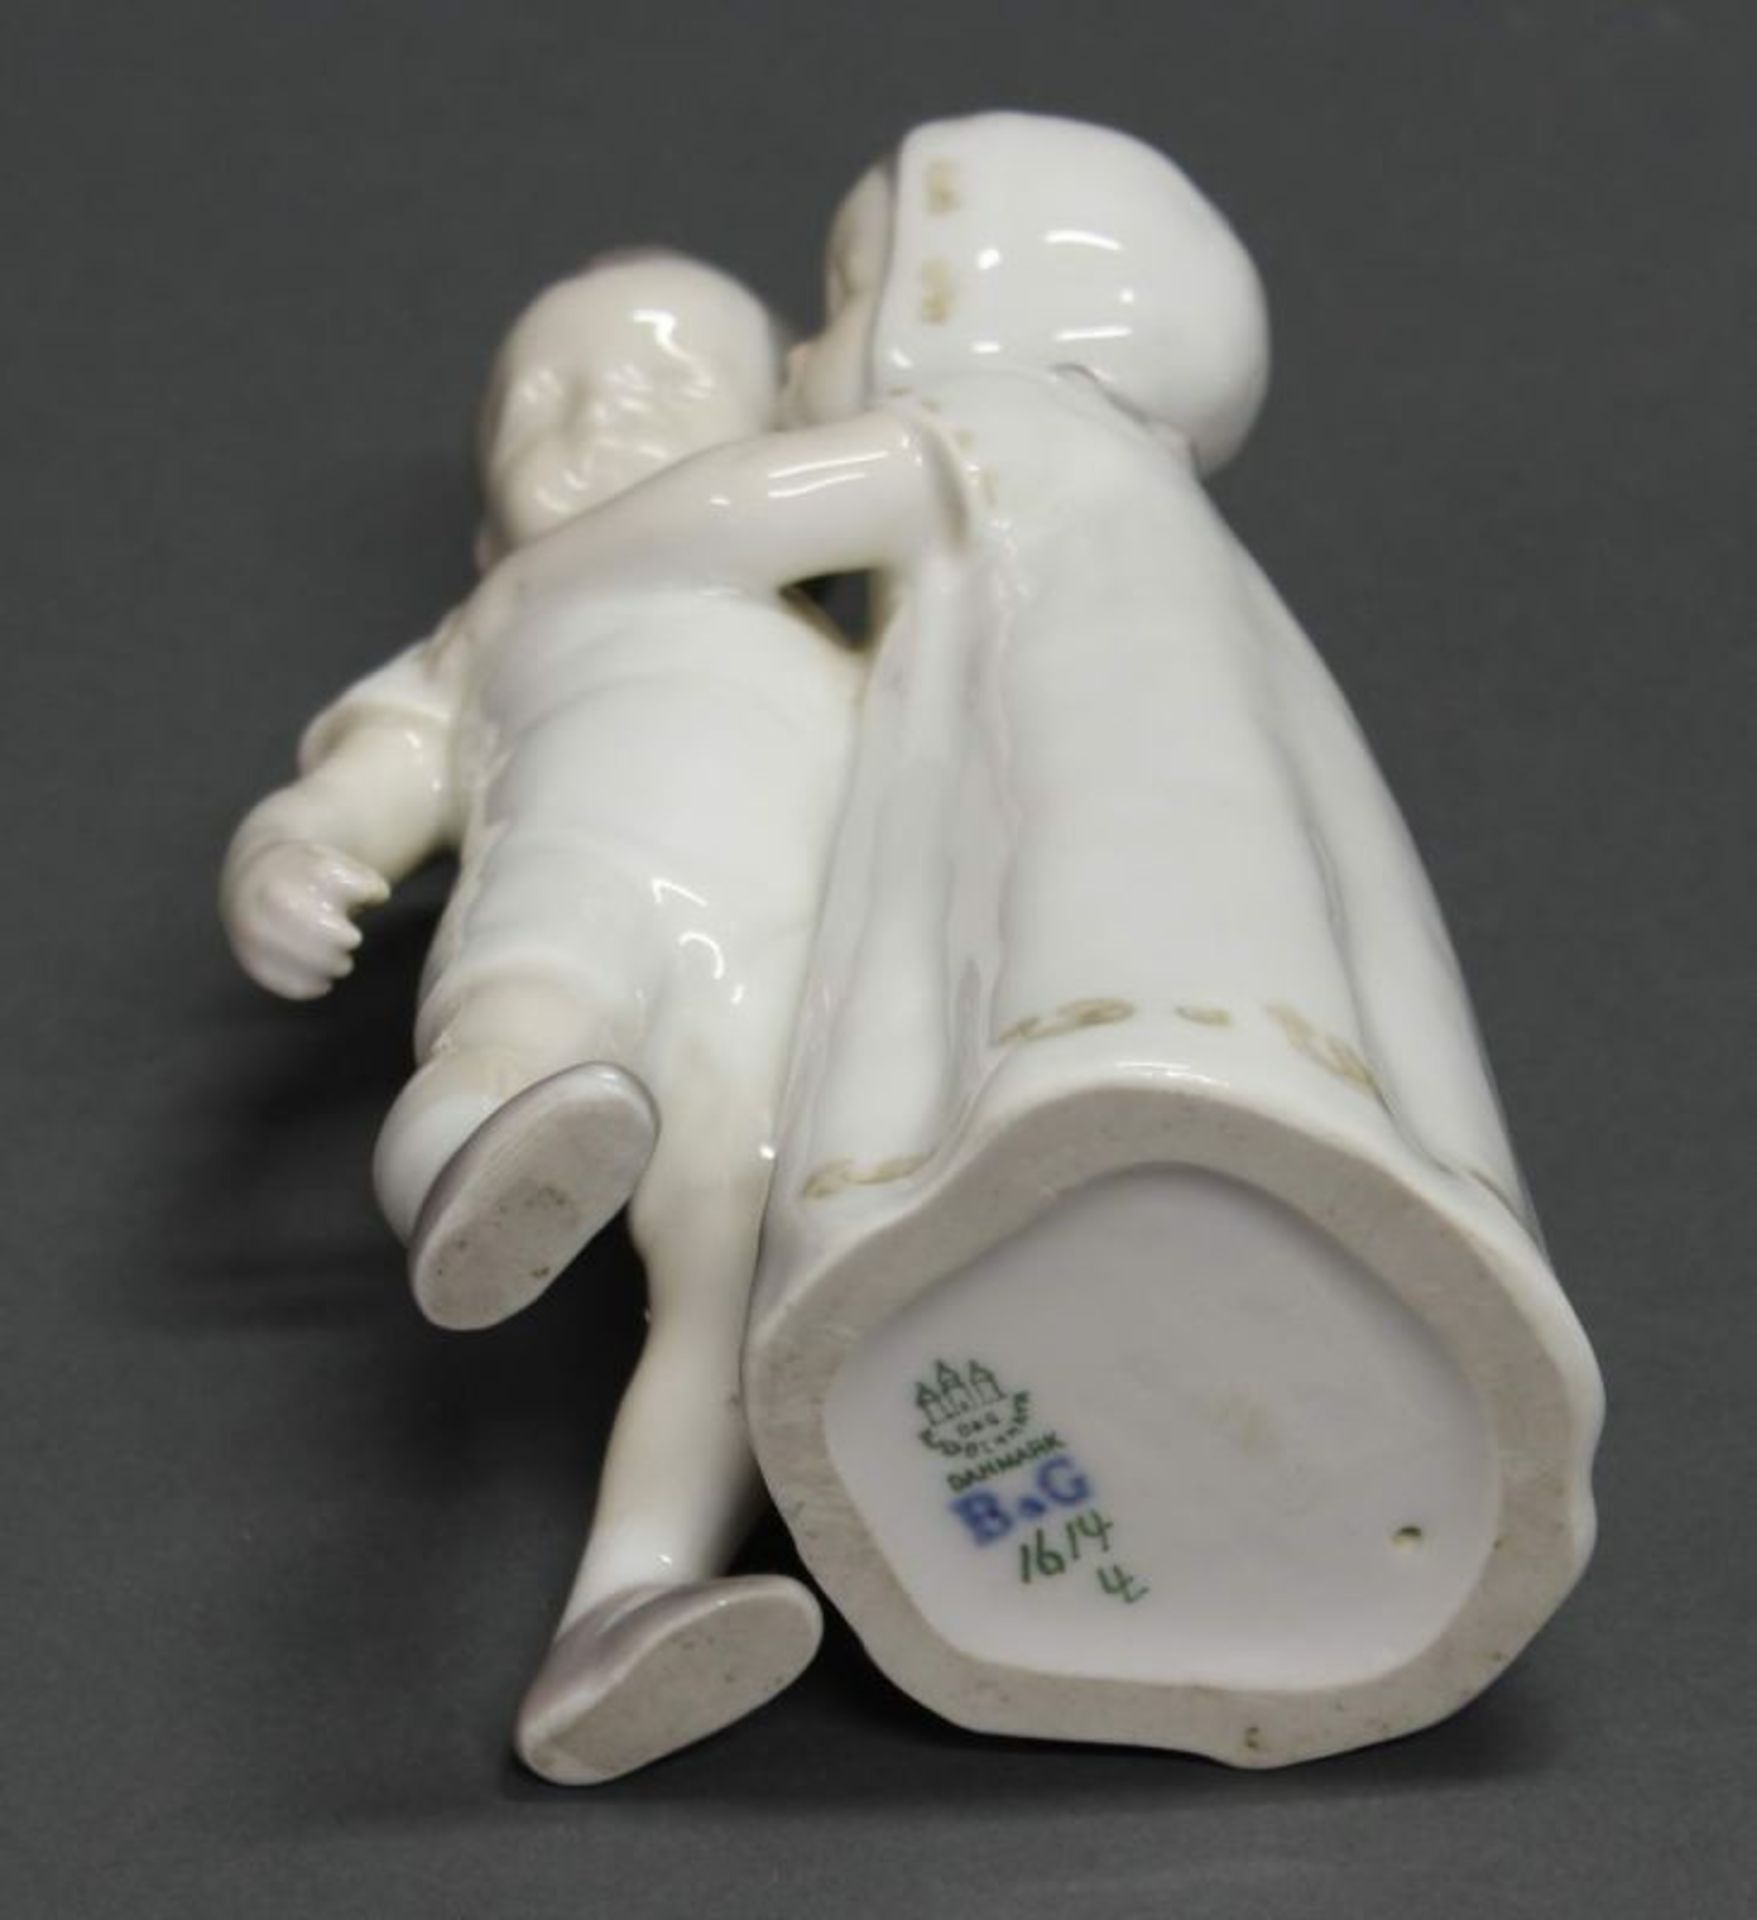 3 Porzellanfiguren, "Lesendes Kinderpaar", "Dame auf einer Bank", "Verschmähte Liebe", Bing & - Image 2 of 2